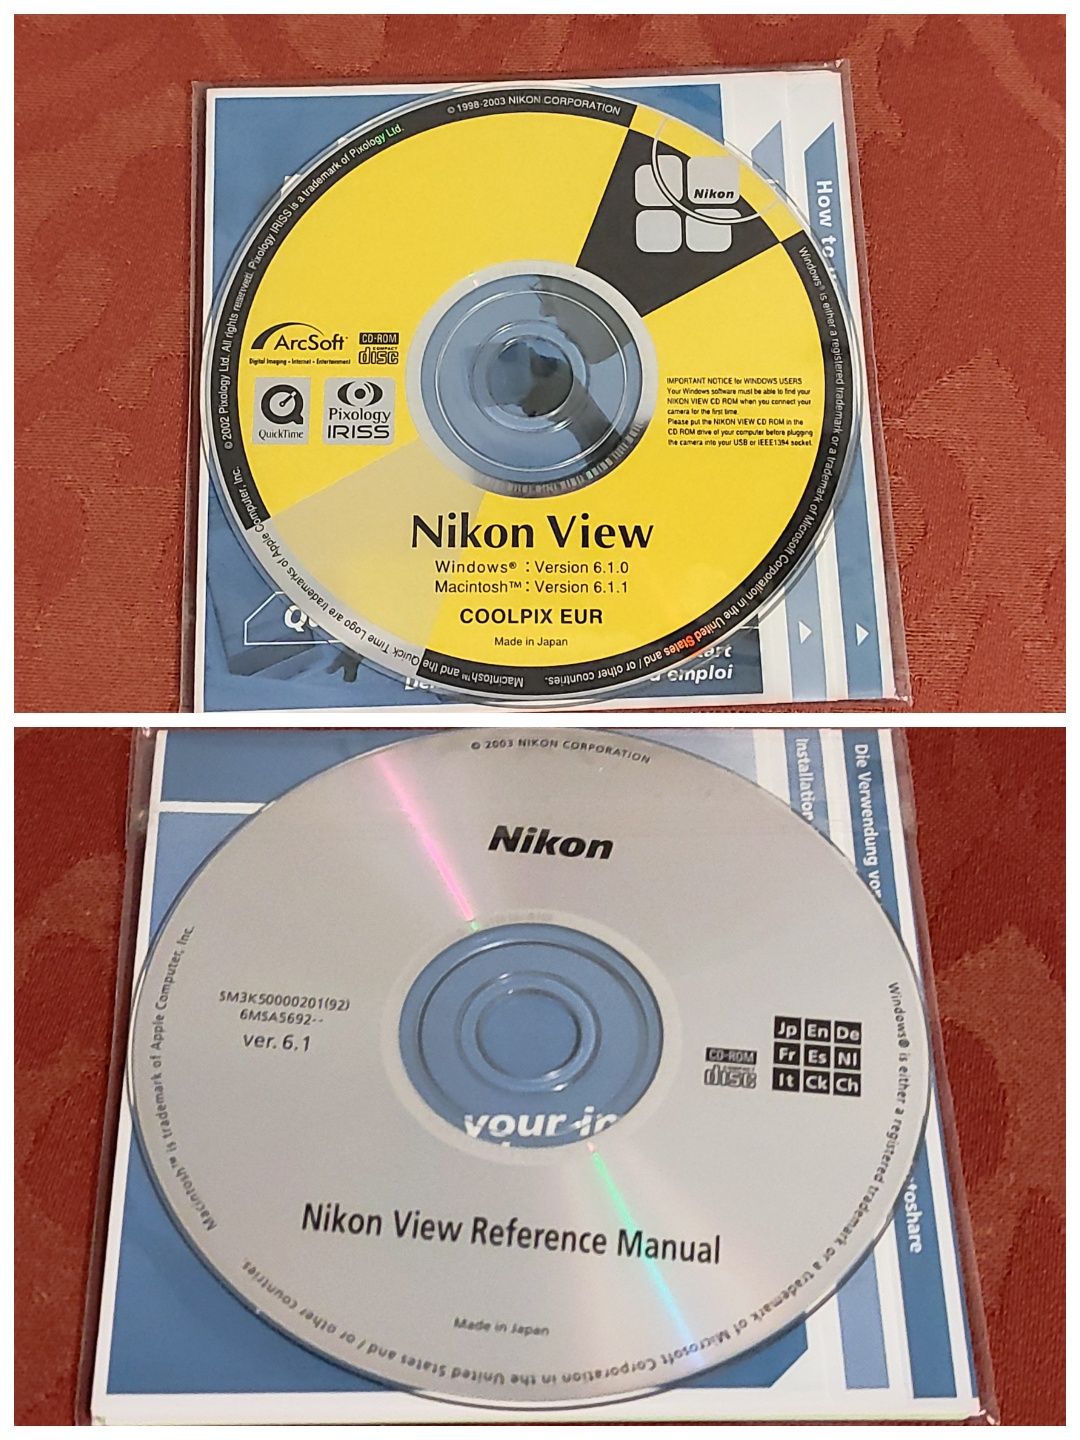 Nikon View Coolpix 2xCD  oryg oprogramowanie foto Windows Macintosh